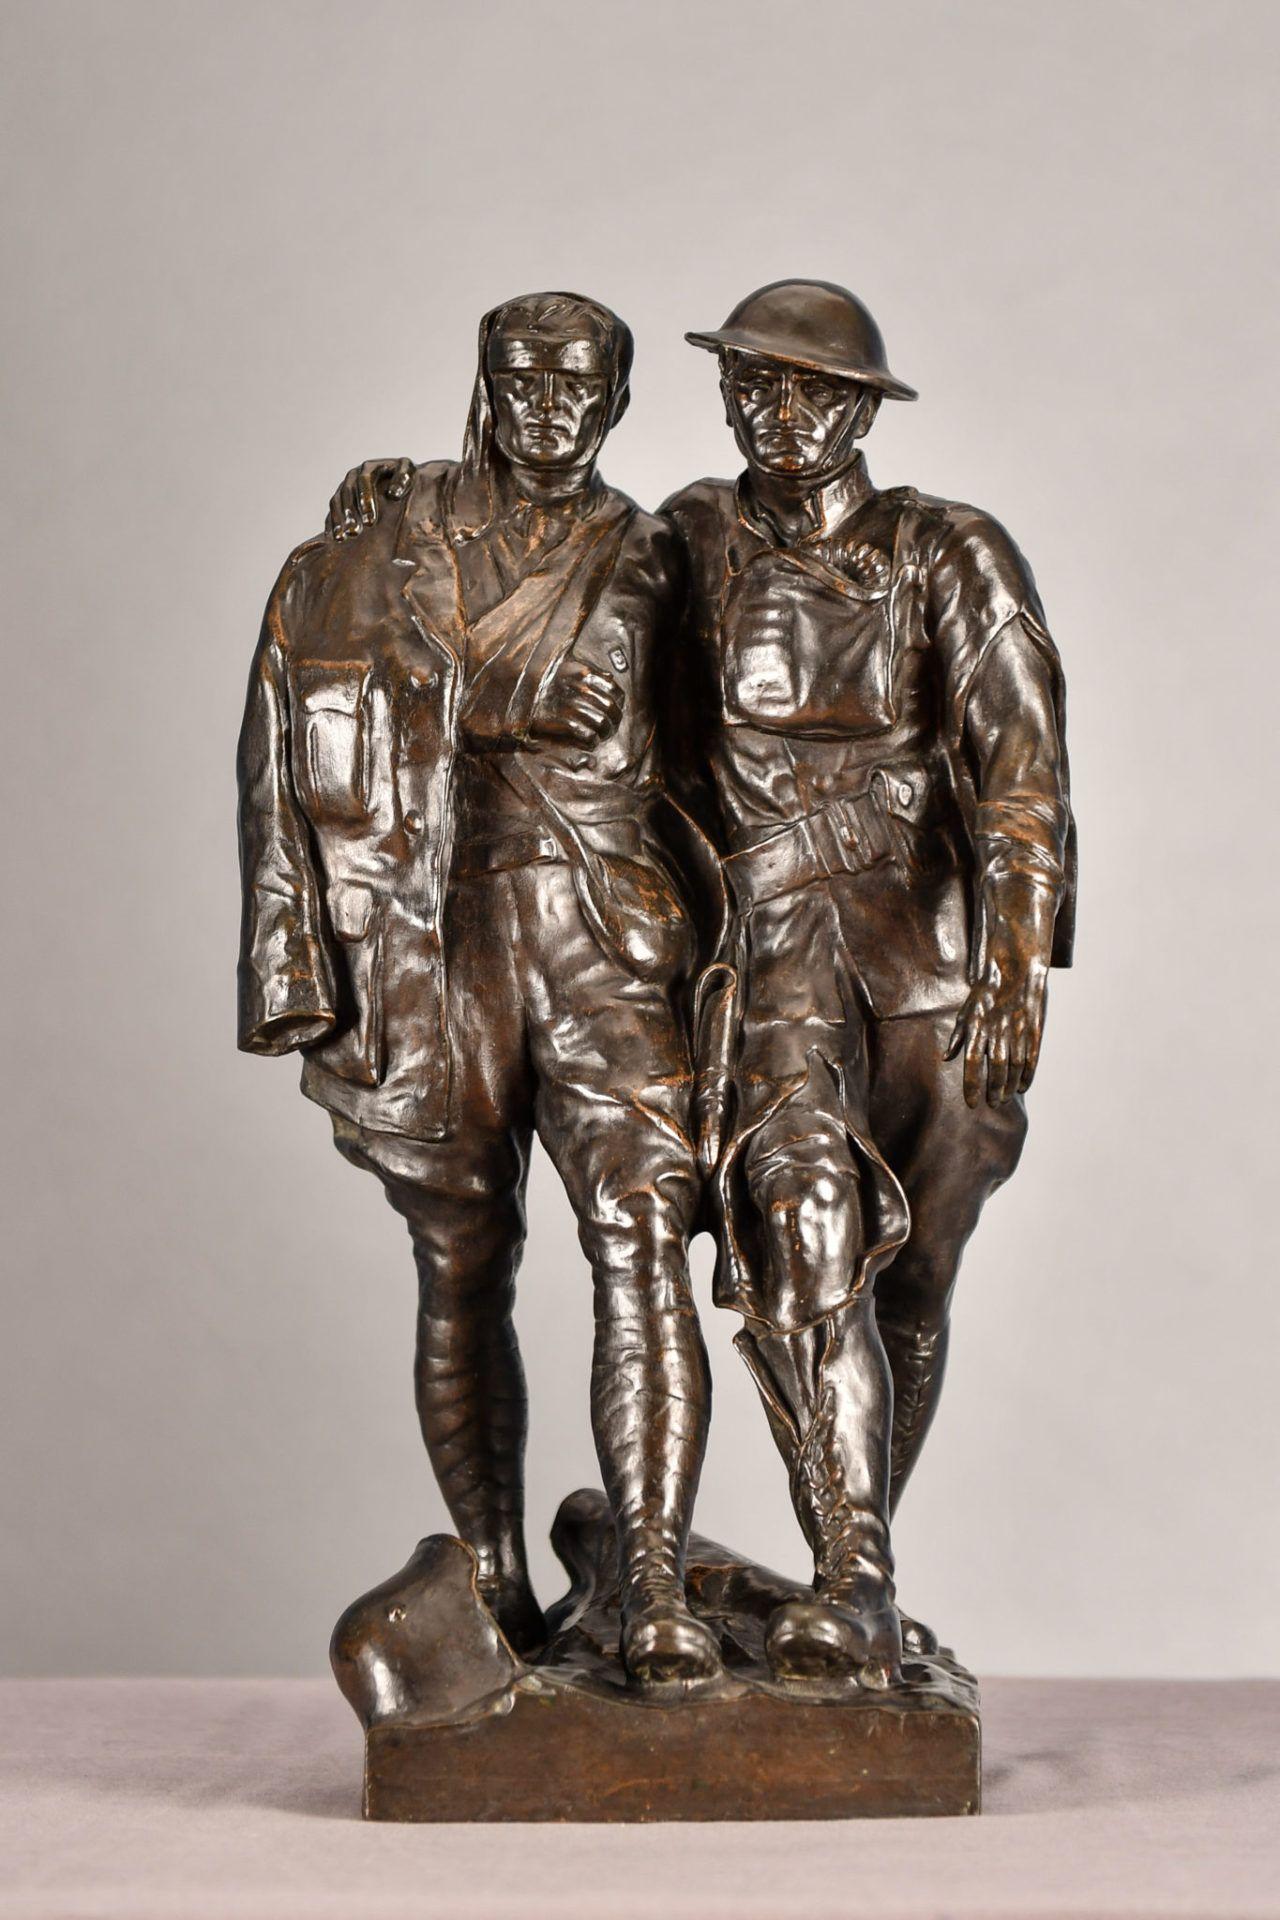 Robert Aitken Figurative Sculpture - Comrades in Arms (Brothers in Arms), Robert Ingersoll Aitken, World War I Bronze